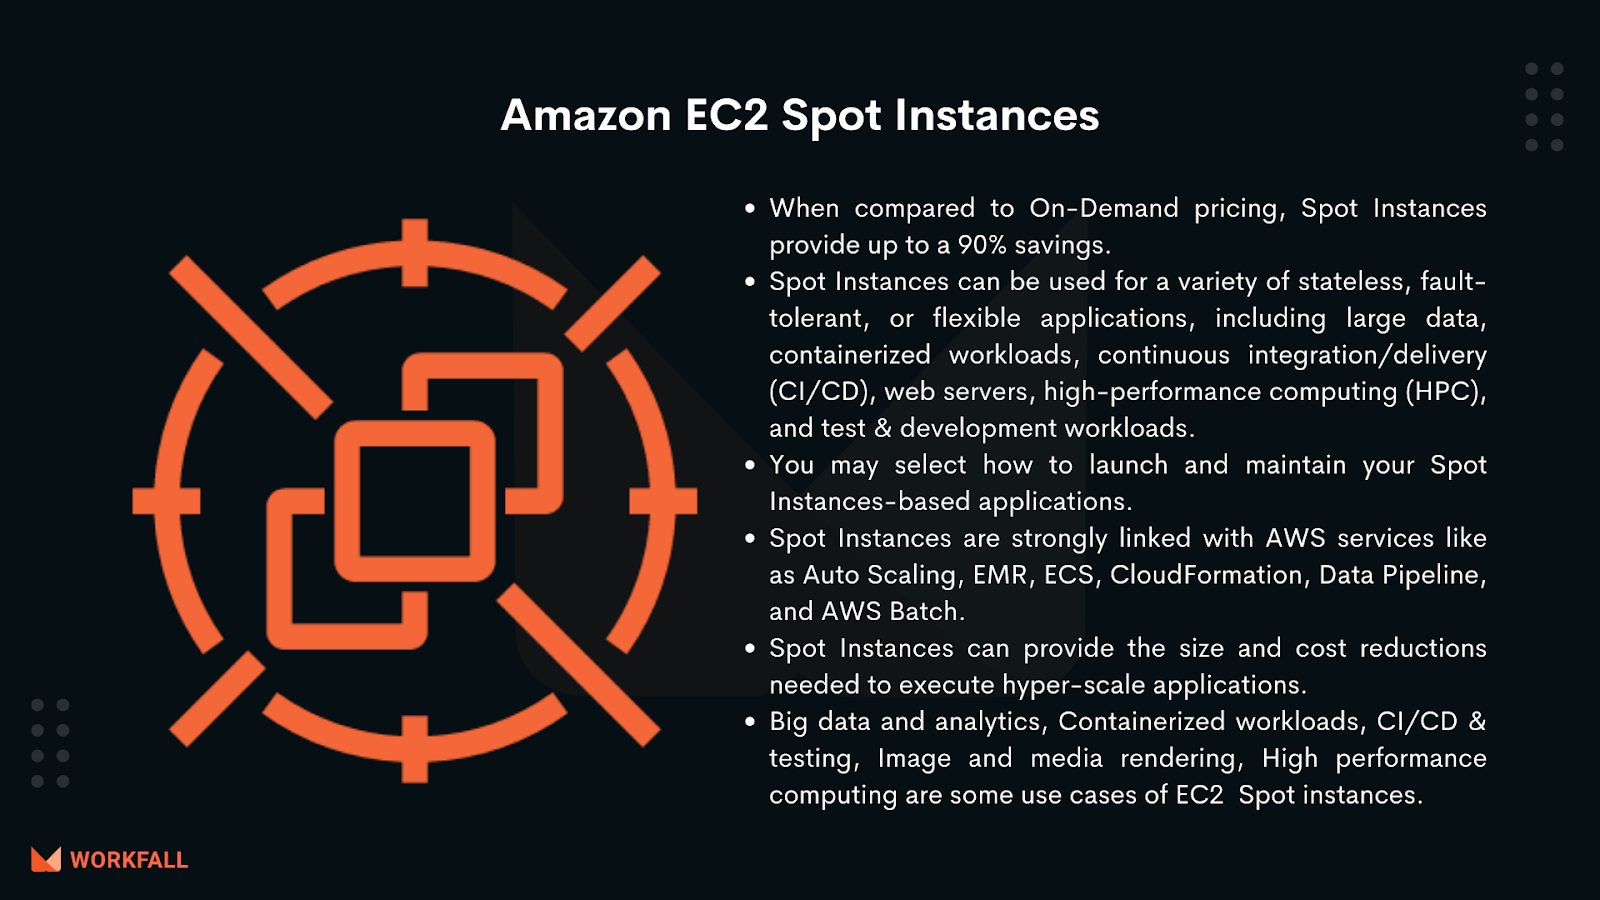 Amazon EC2 Spot Instances